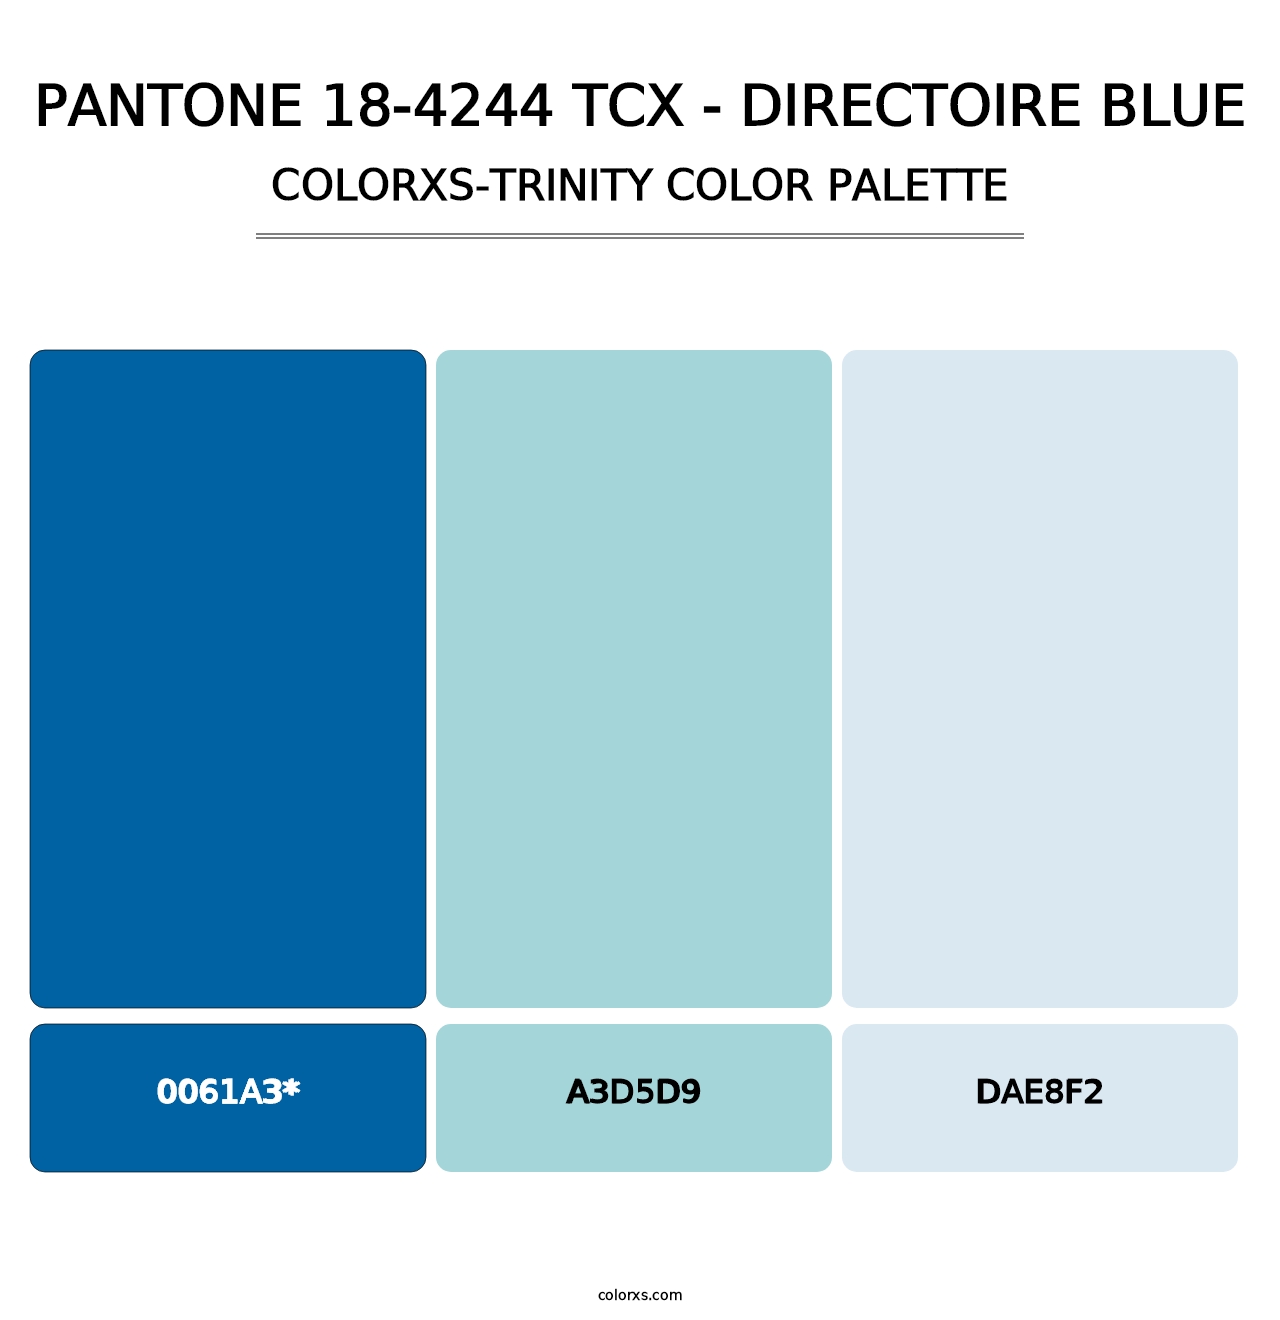 PANTONE 18-4244 TCX - Directoire Blue - Colorxs Trinity Palette